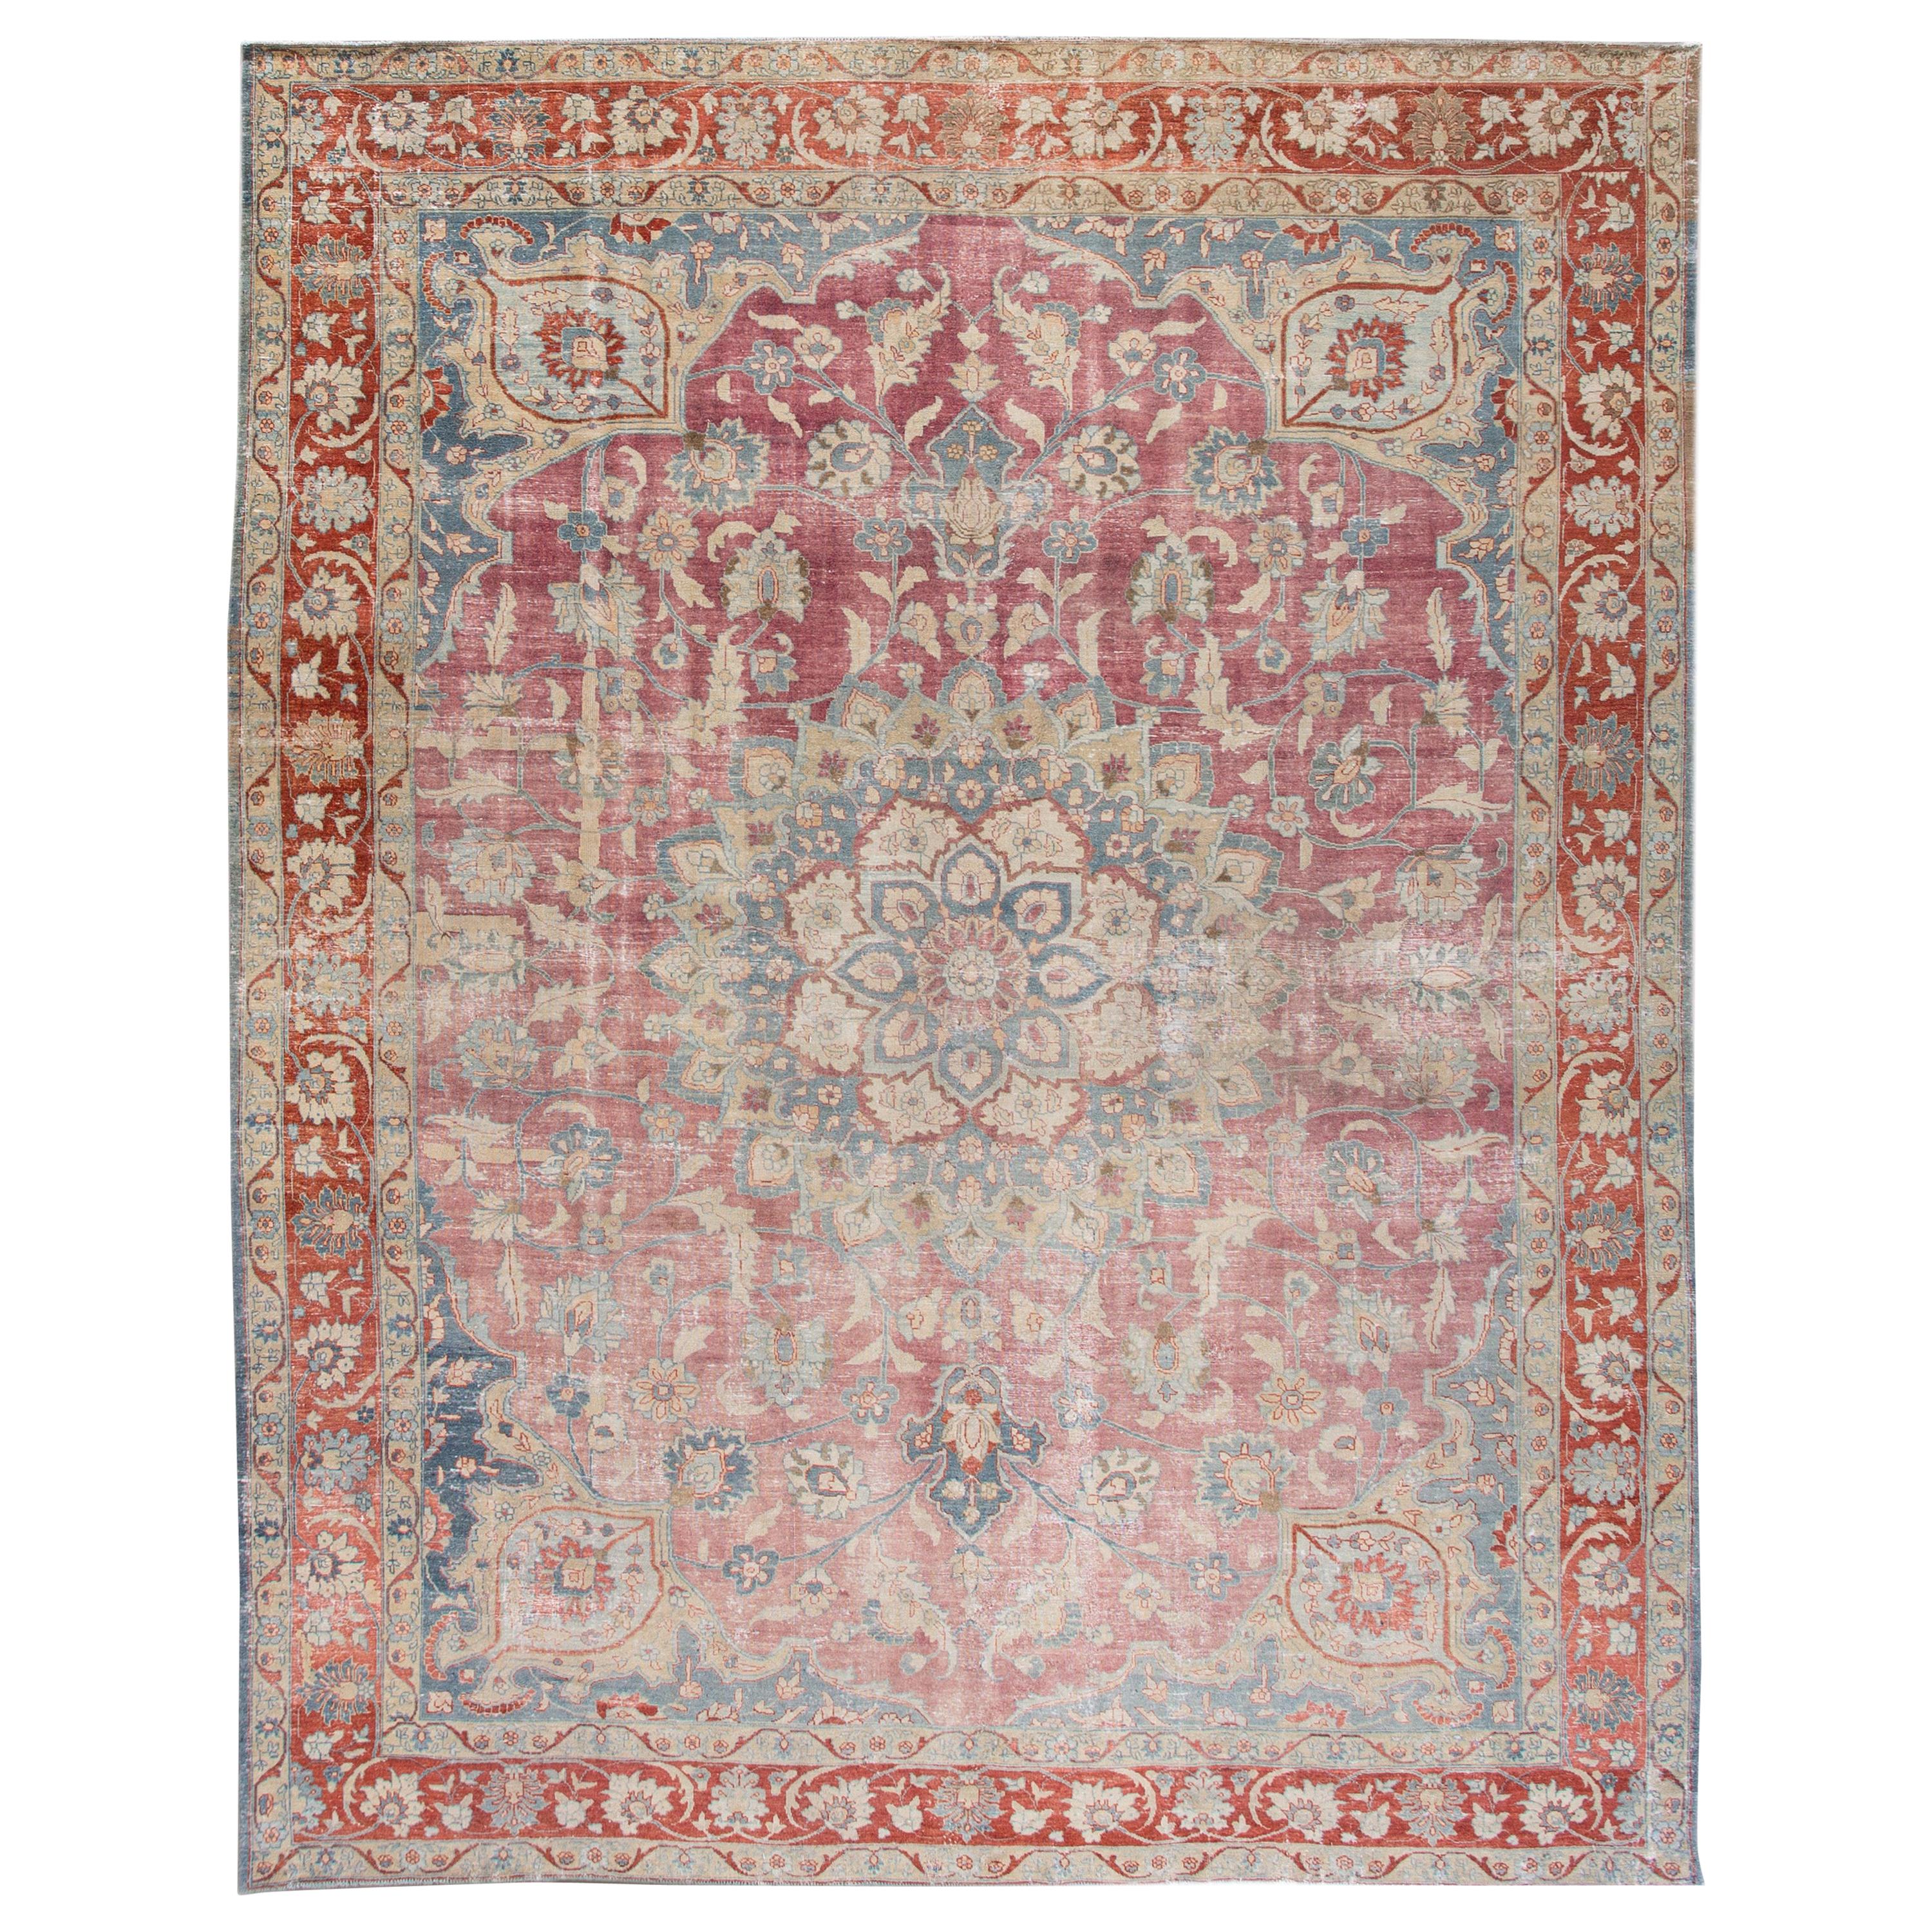 Antiker persischer, roter und blauer handgefertigter, geblümter Teppich aus Wolle mit Medaillon